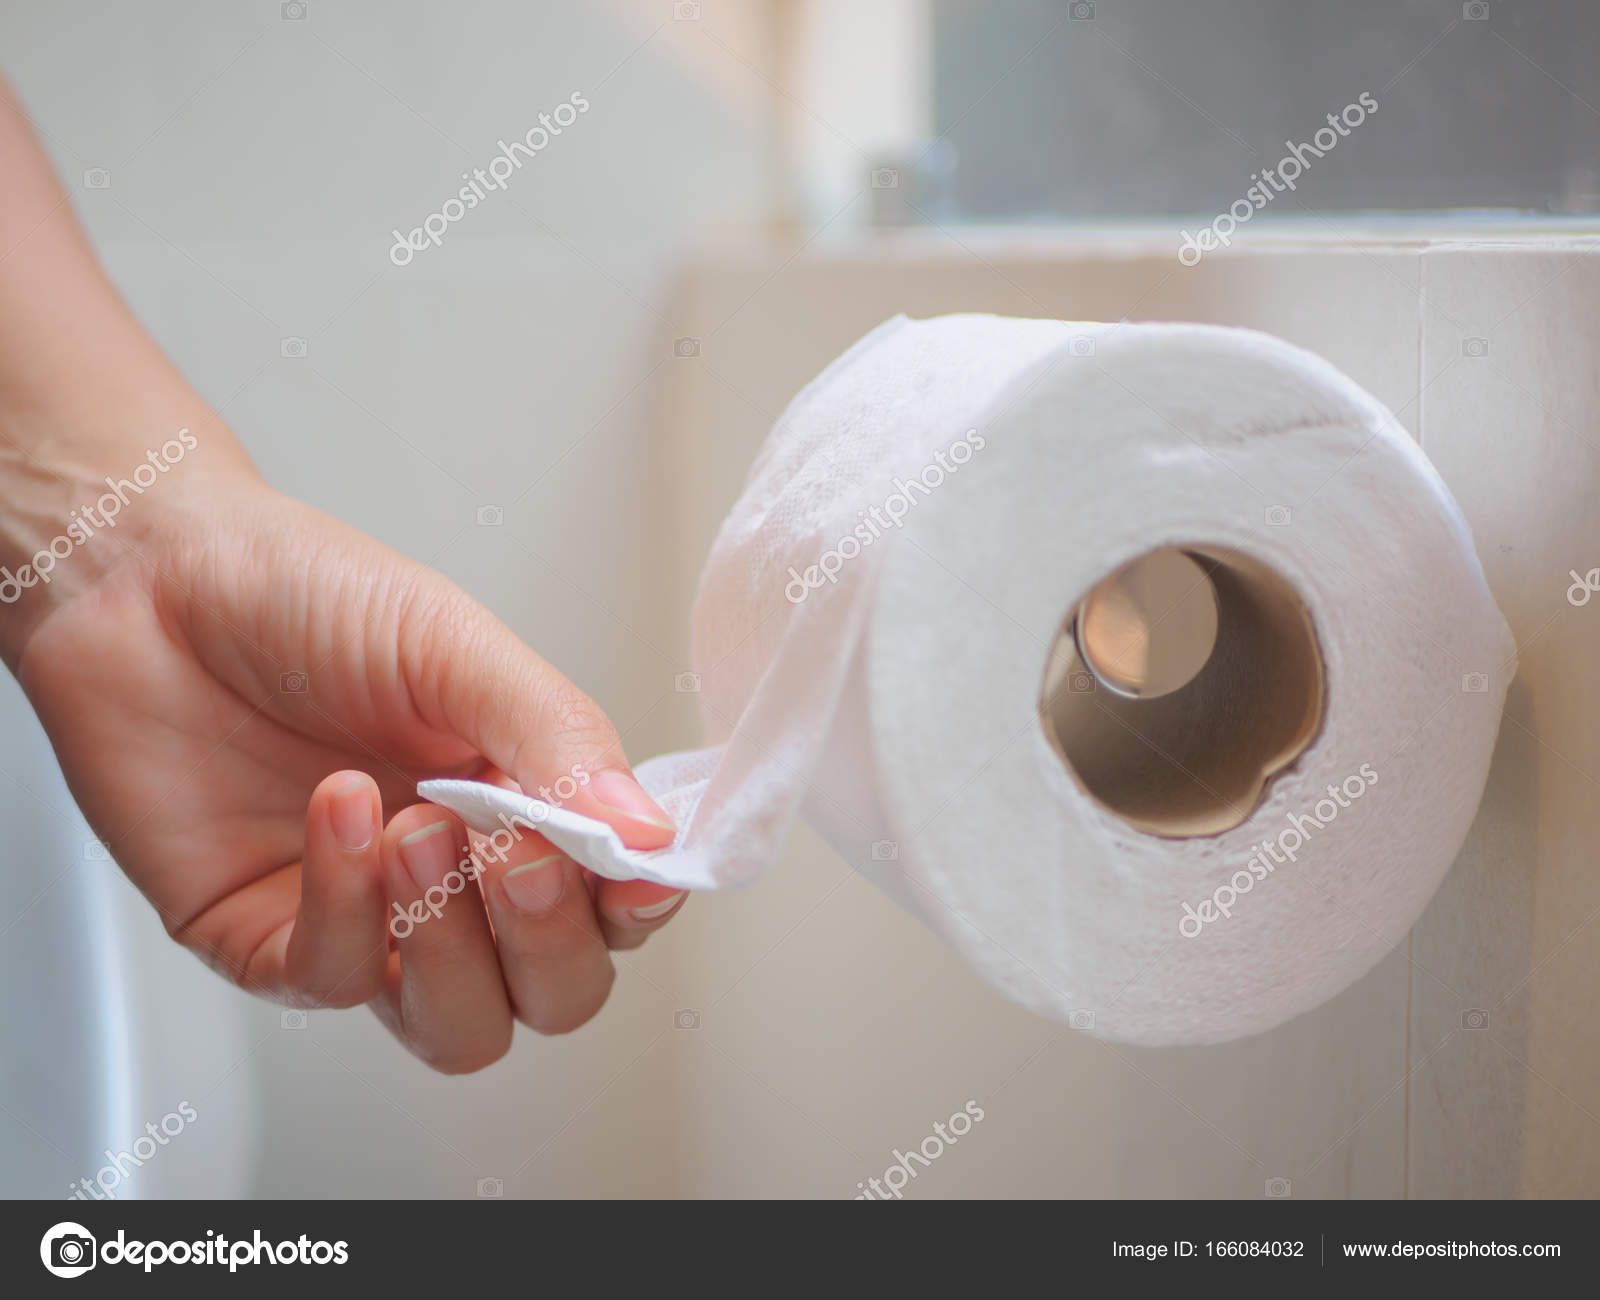 День рождения туалетной бумаги. Для туалетной бумаги из ткани. С днем туалетной бумаги. Праздник туалетной бумаги. Туалетная бумага для гостиниц.